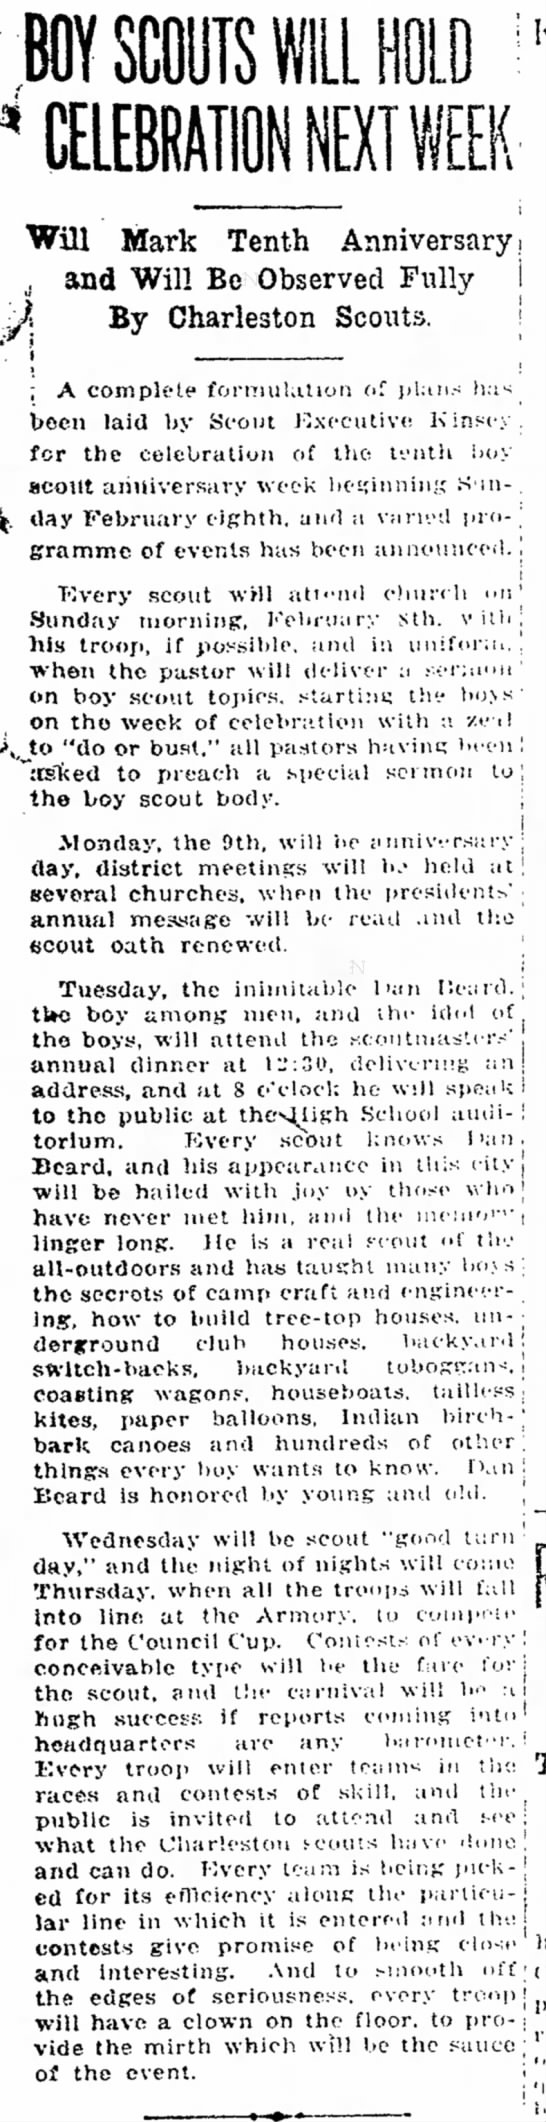 Boy Scouts 10th Anniversary Jan 1920 - 